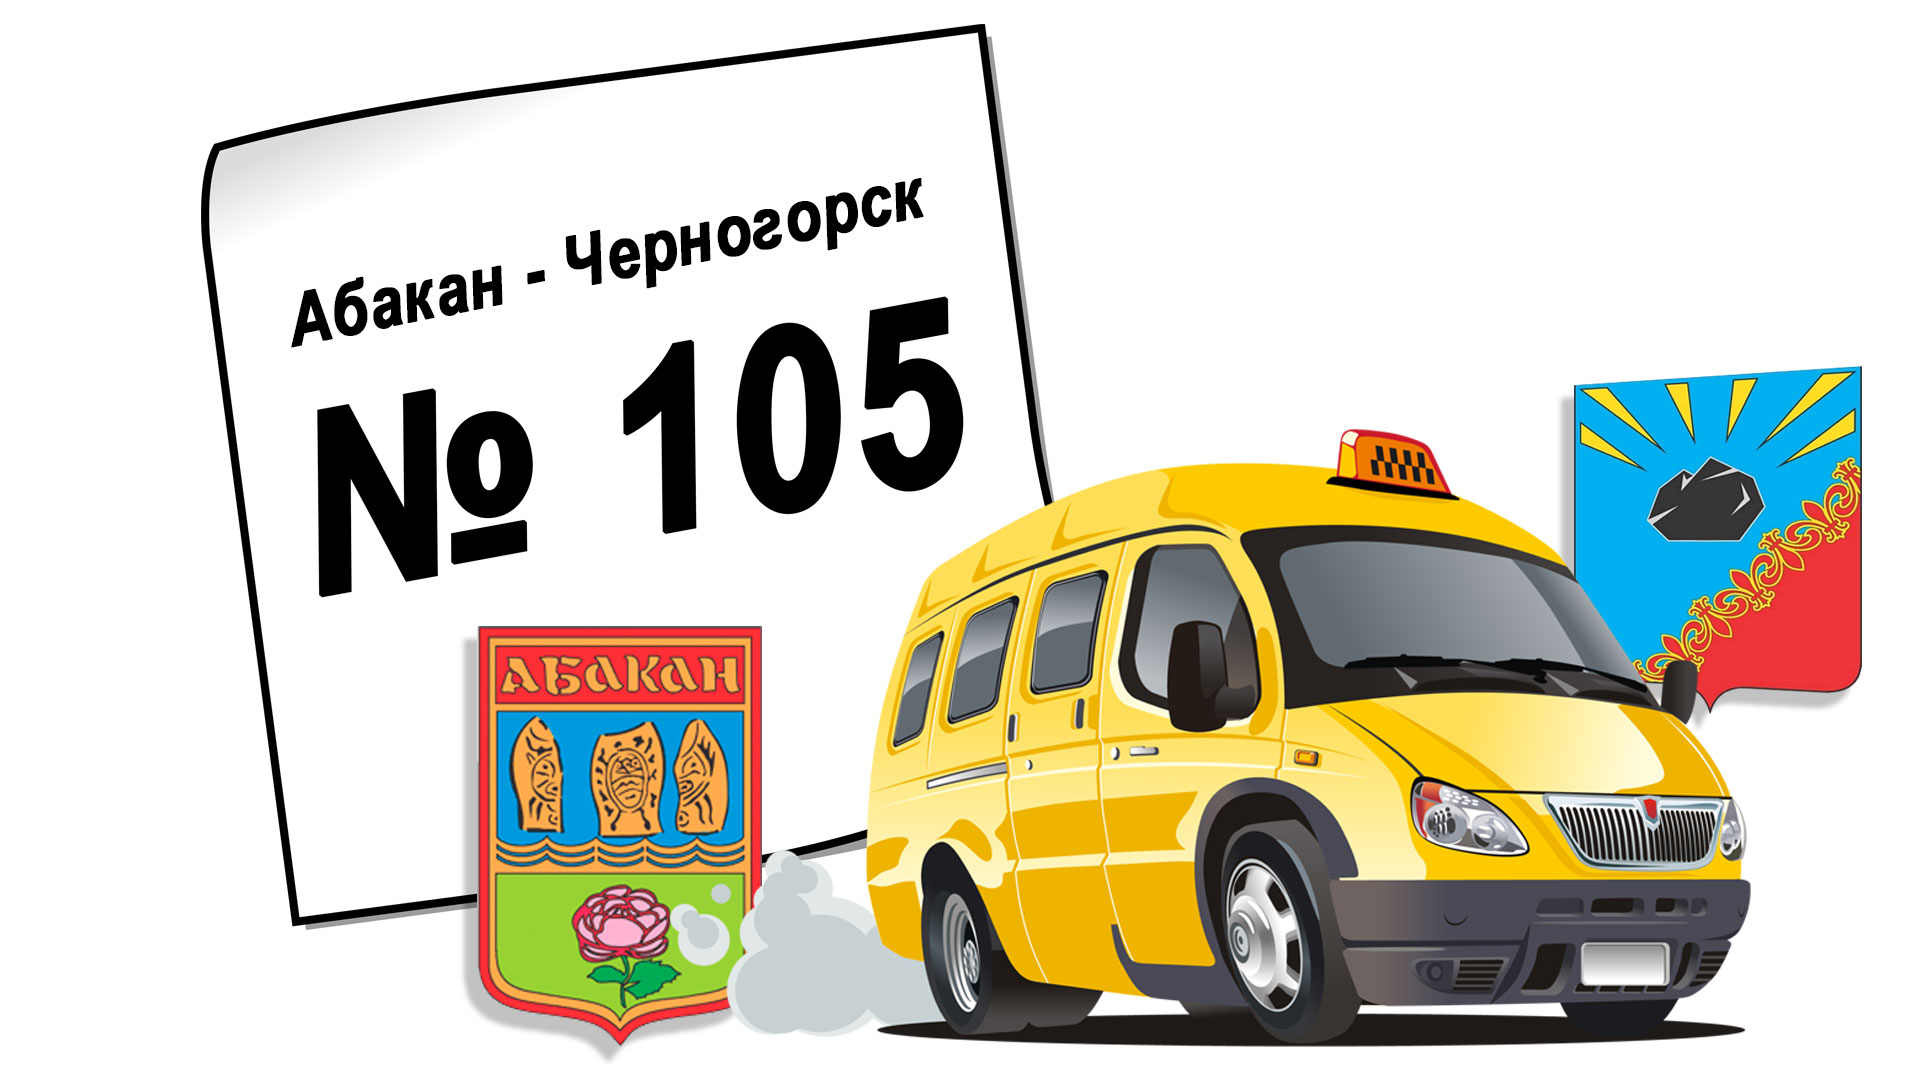 Расписание автобуса № 105, Абакан - Черногорск, маршрутка: 2023 год